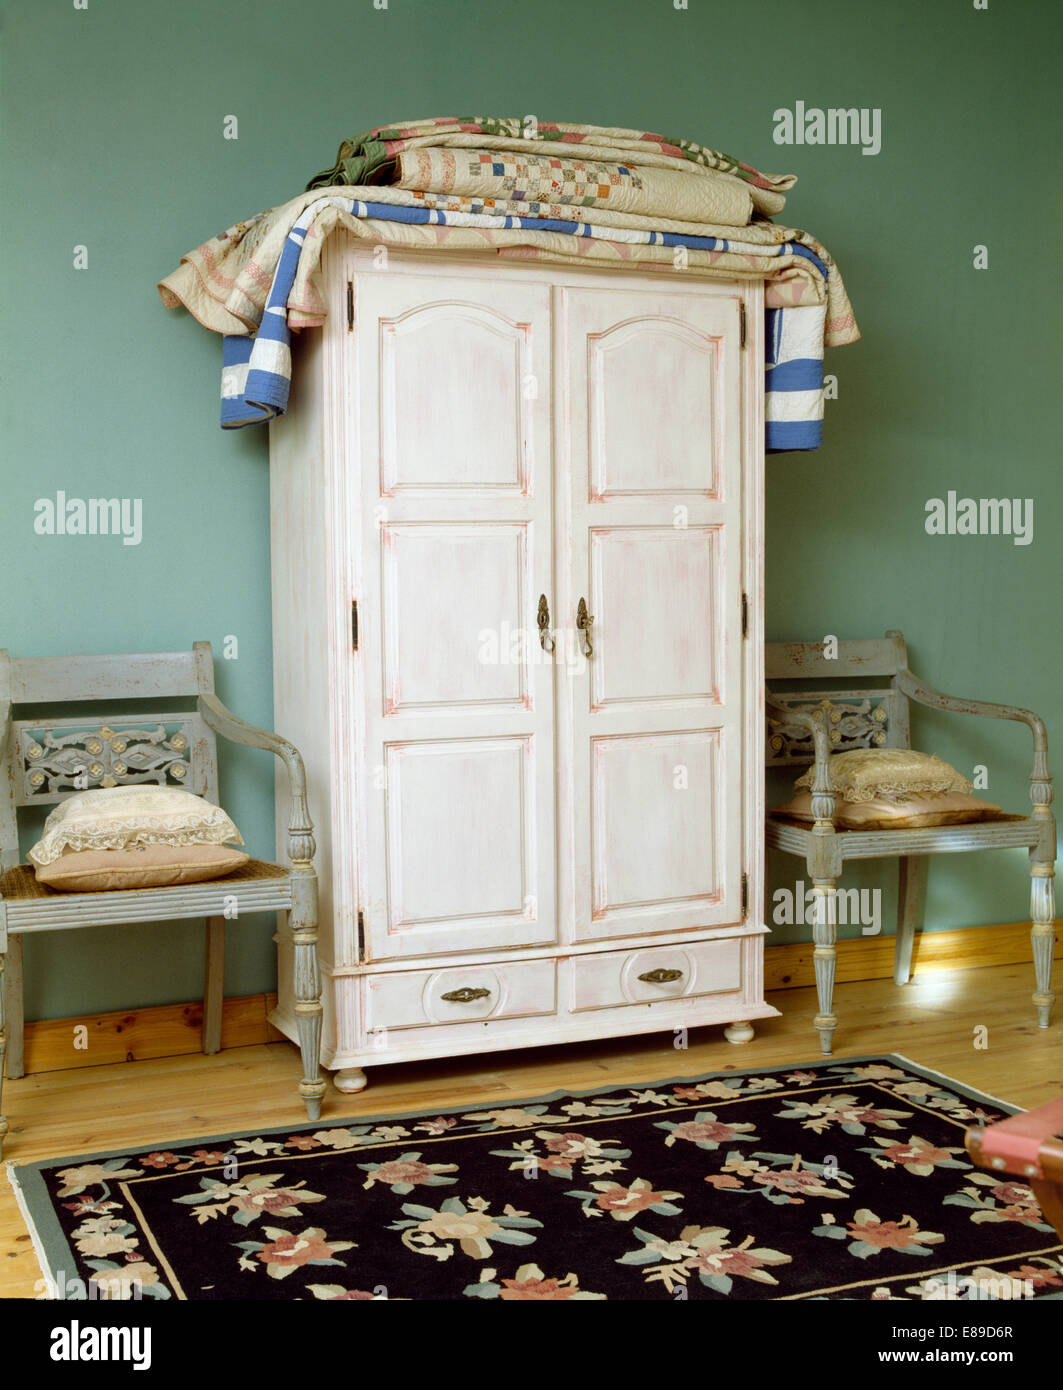 Ripiegate patchwork trapunte su bianco armadio dipinto in colore verde pallido camera da letto con tappeto floreale e di colore grigio pallido sedie Foto Stock